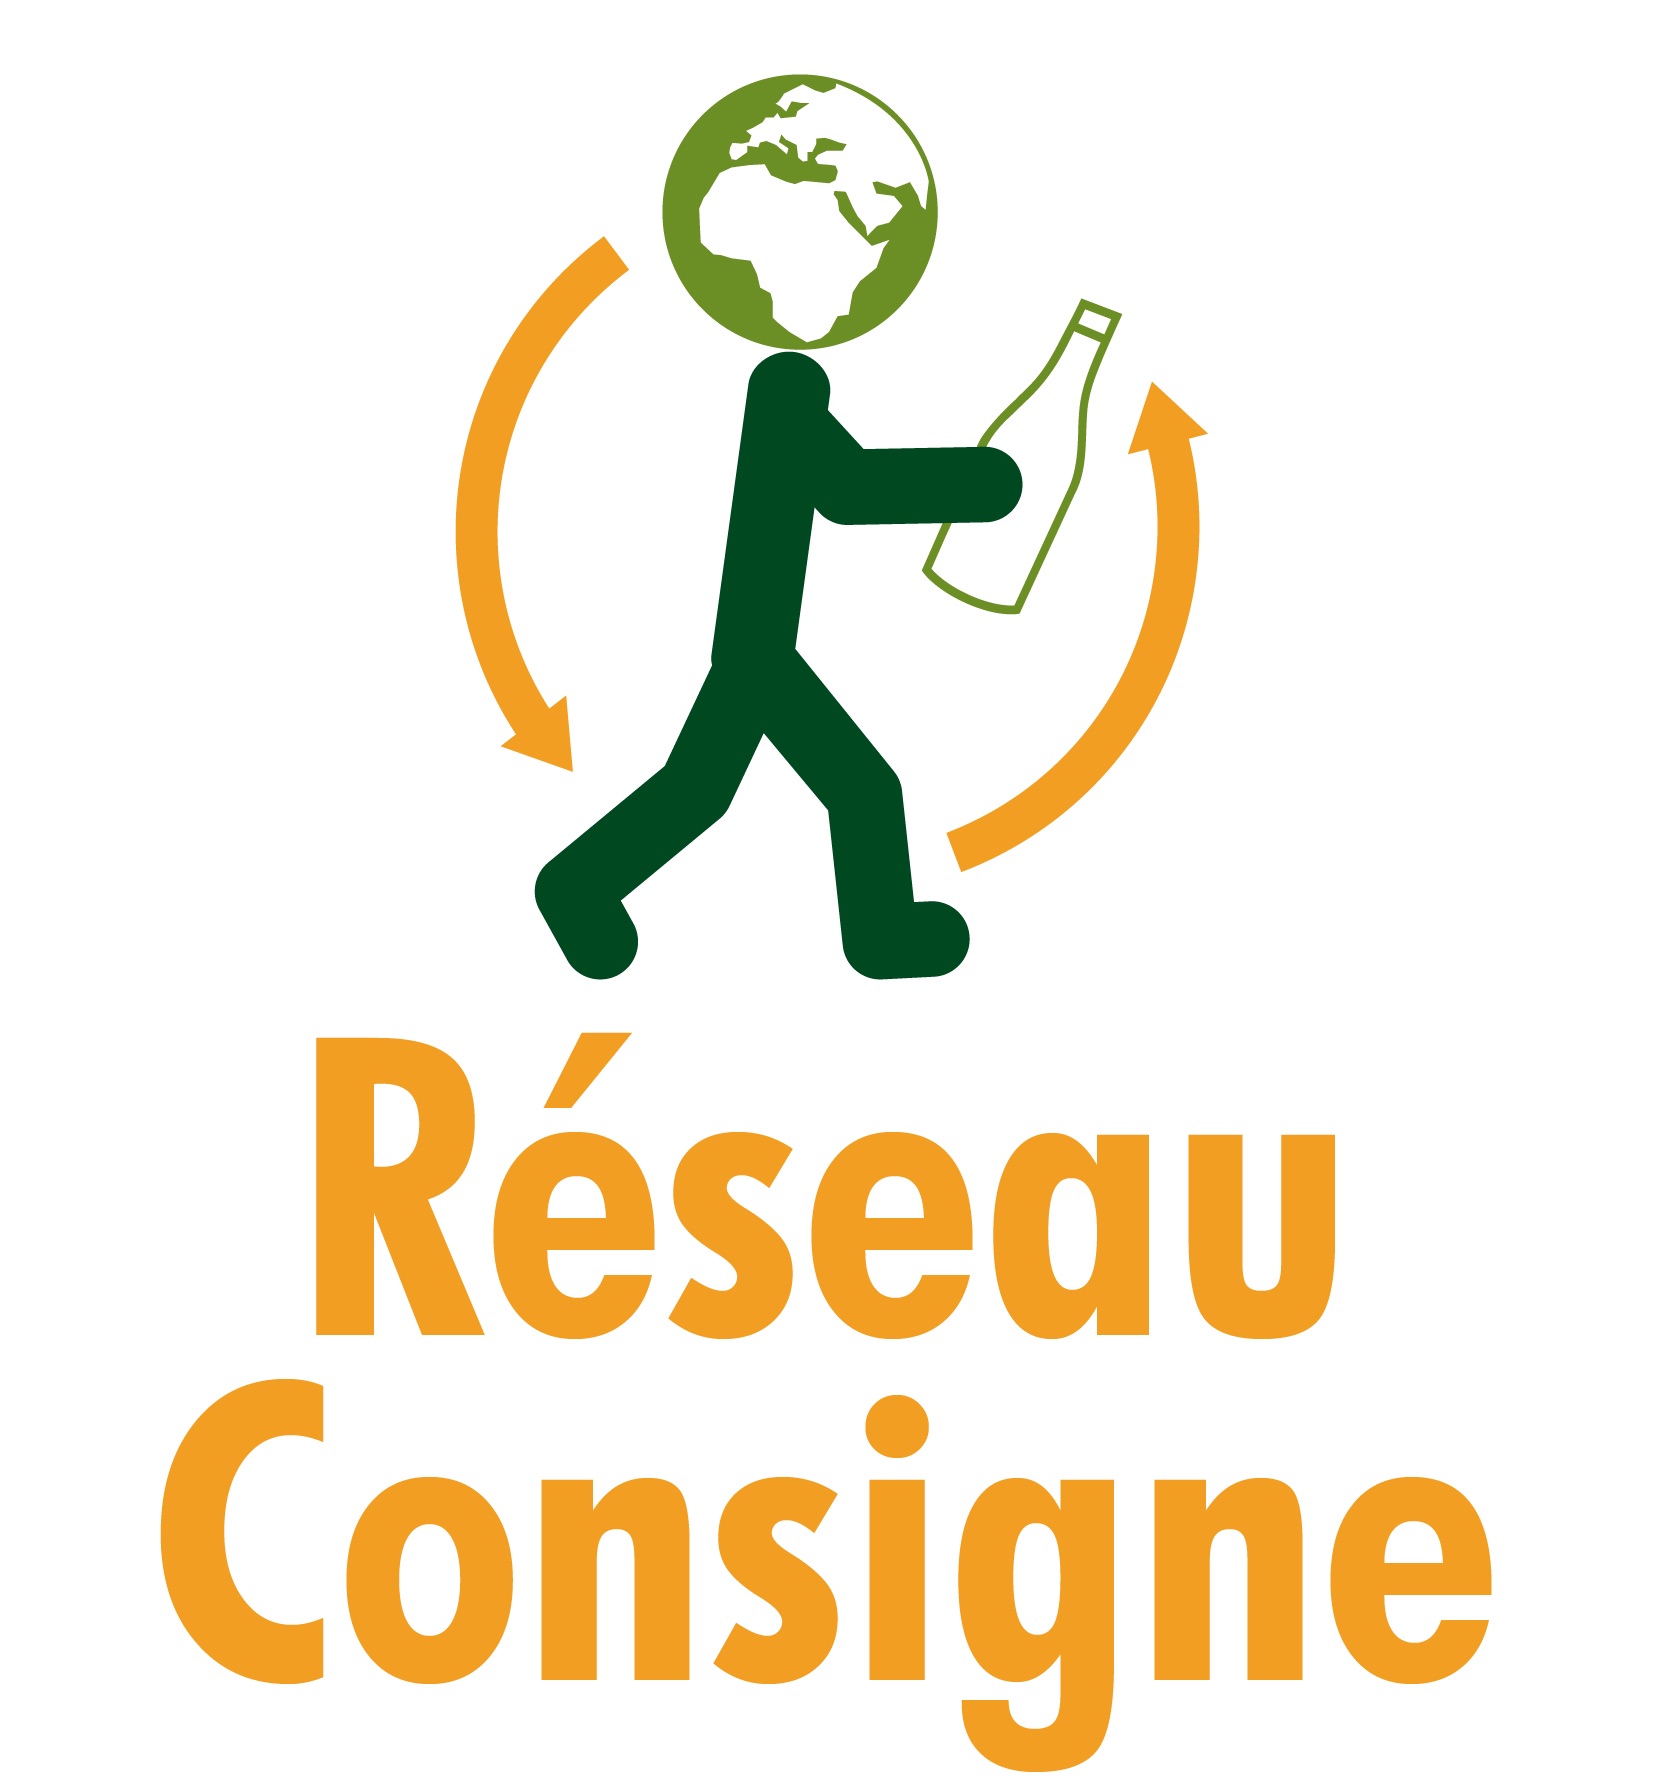 μέλος-reseauconsigne_logo